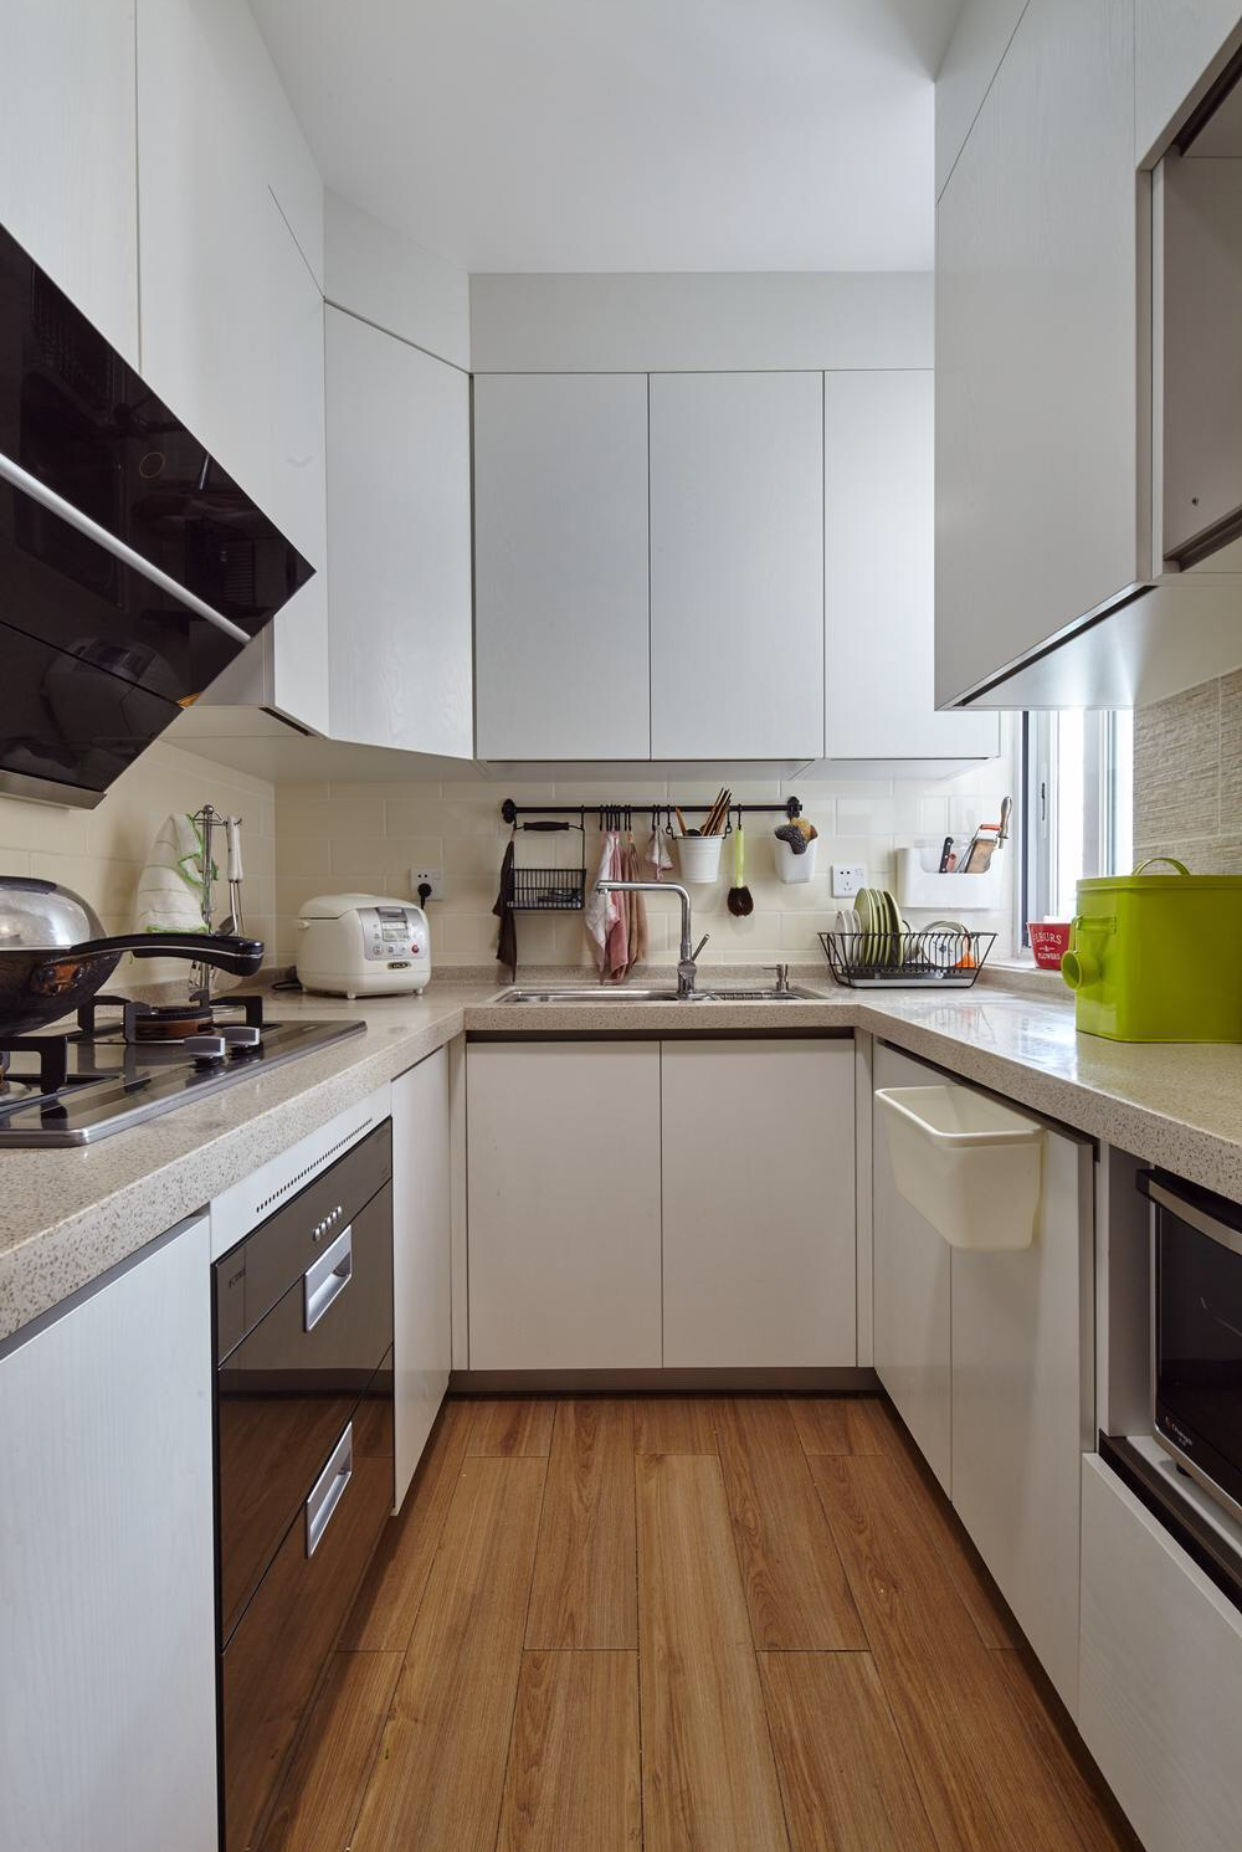 2平米厨房设计效果图图片